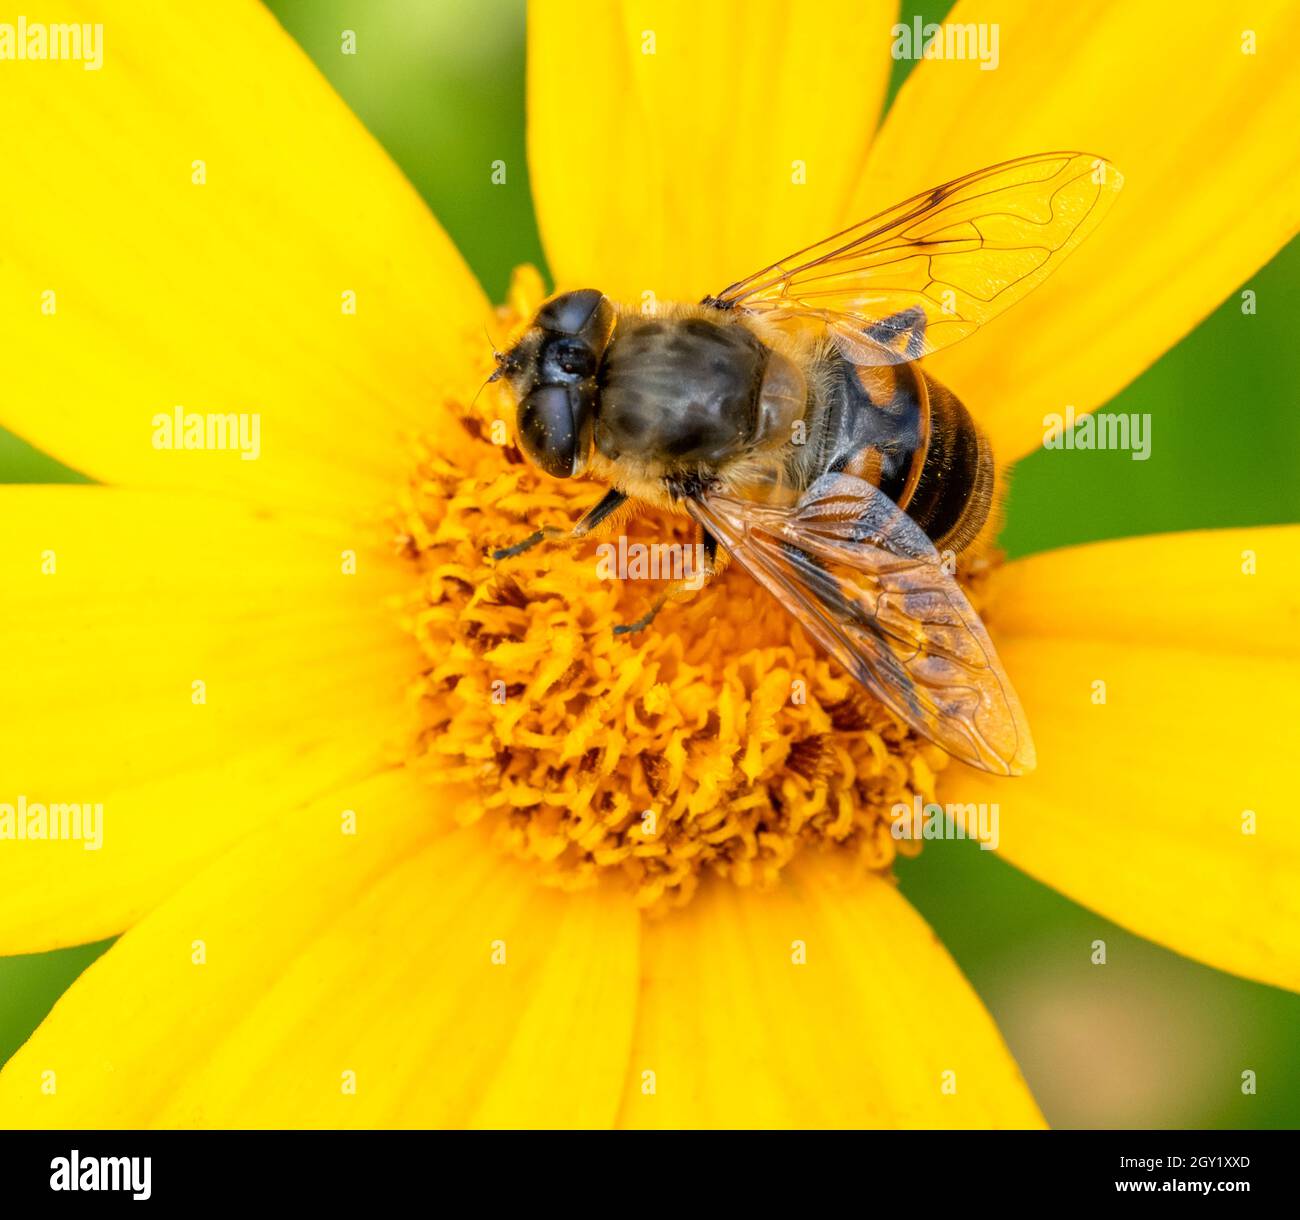 Abejas de miel británicas recolectando néctar de una flor amarilla Foto de stock